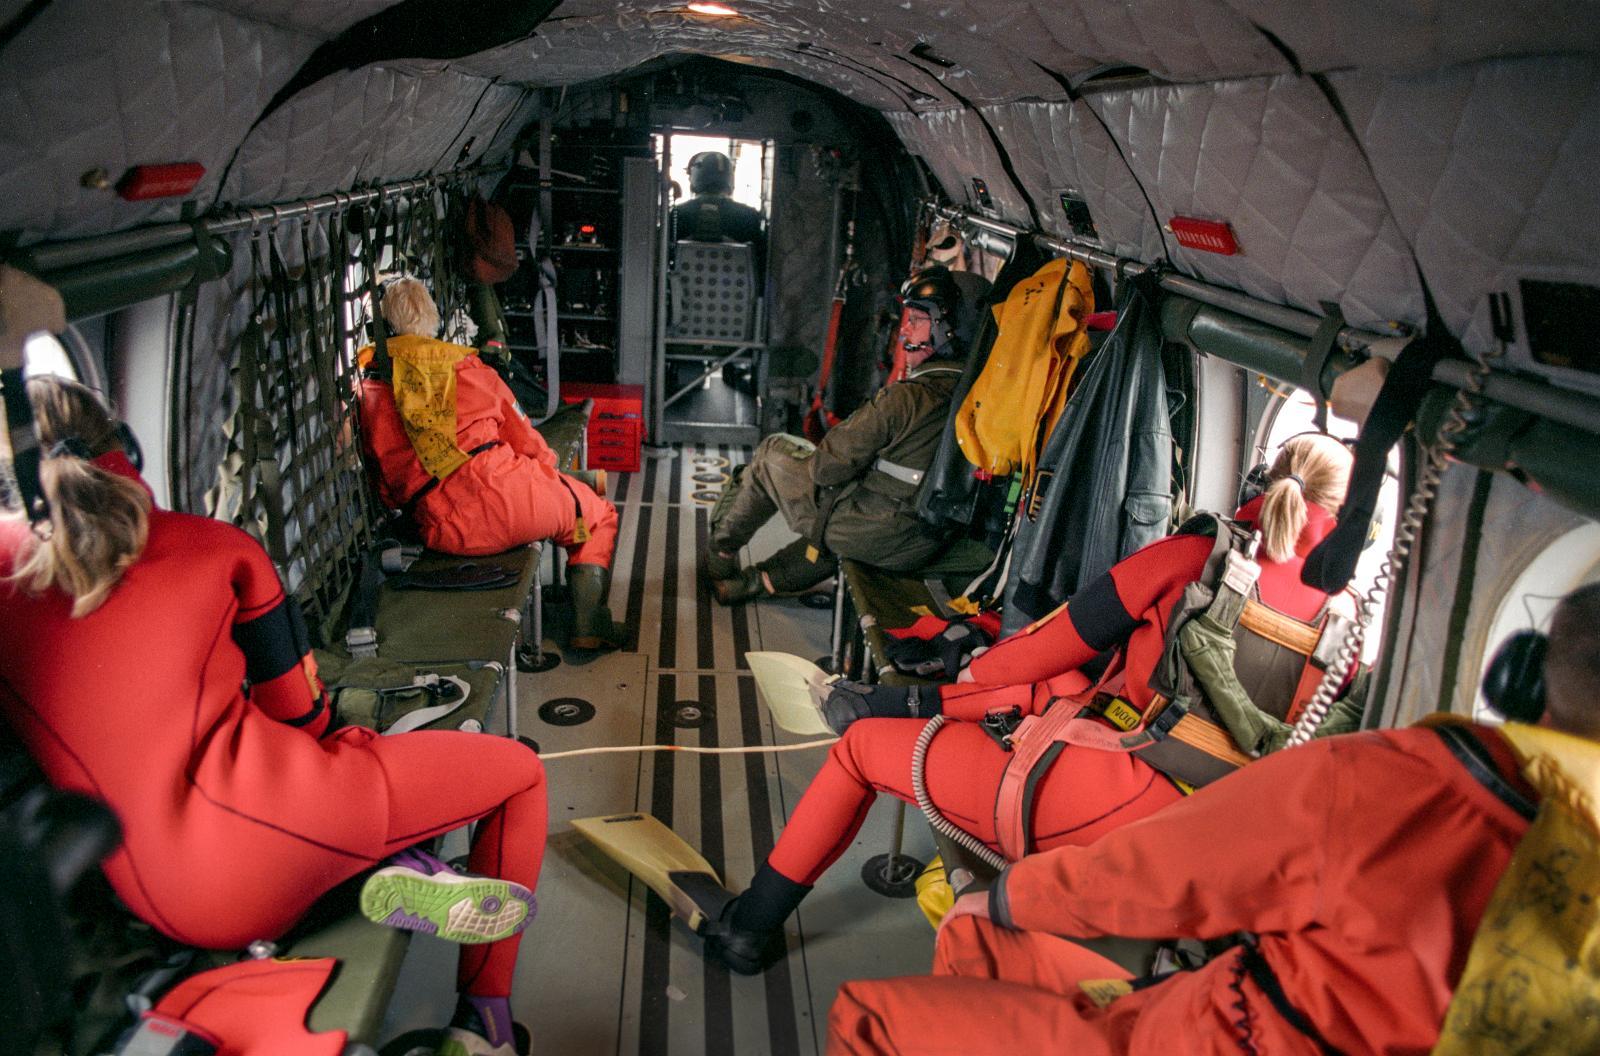 Grodmän från räddningspersonalen på svenska marinens helikopter i samband med räddningsaktionen för att bärga passagerare från M/S Estonia.